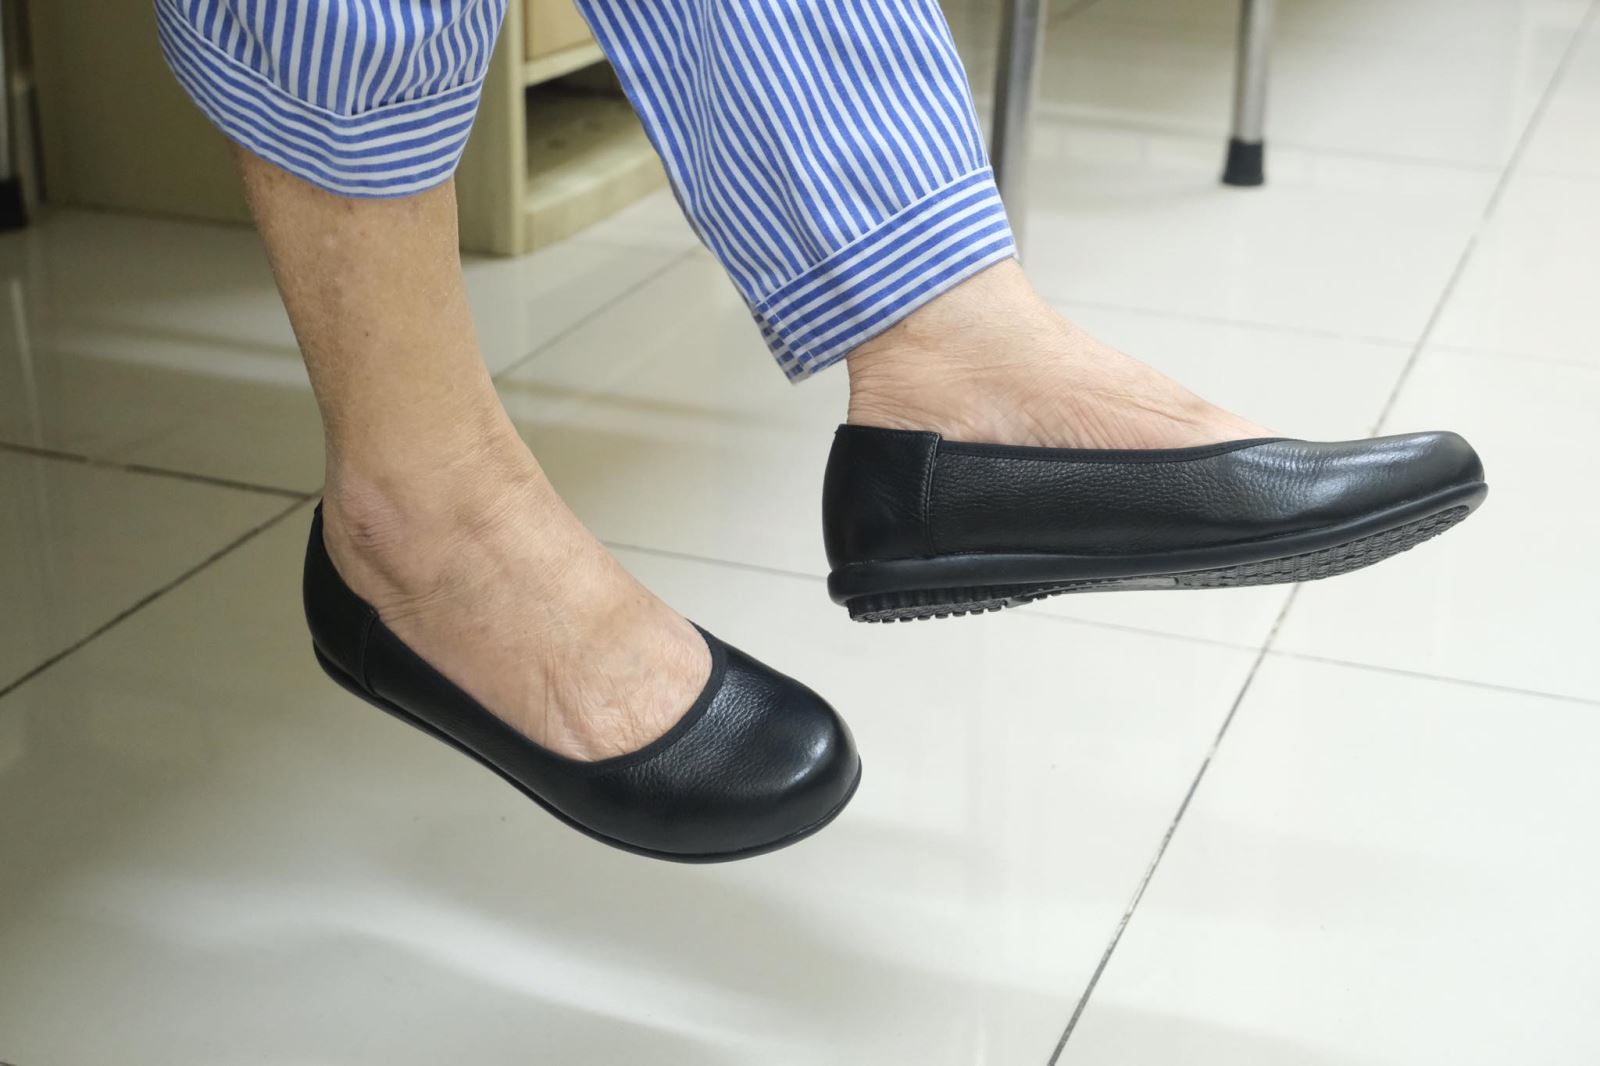 Loại giầy chuyên biệt cho người bệnh ĐTĐ được thiết kế bởi BV Nội tiết Trung ương và Viện Nghiên cứu Da - Giày.